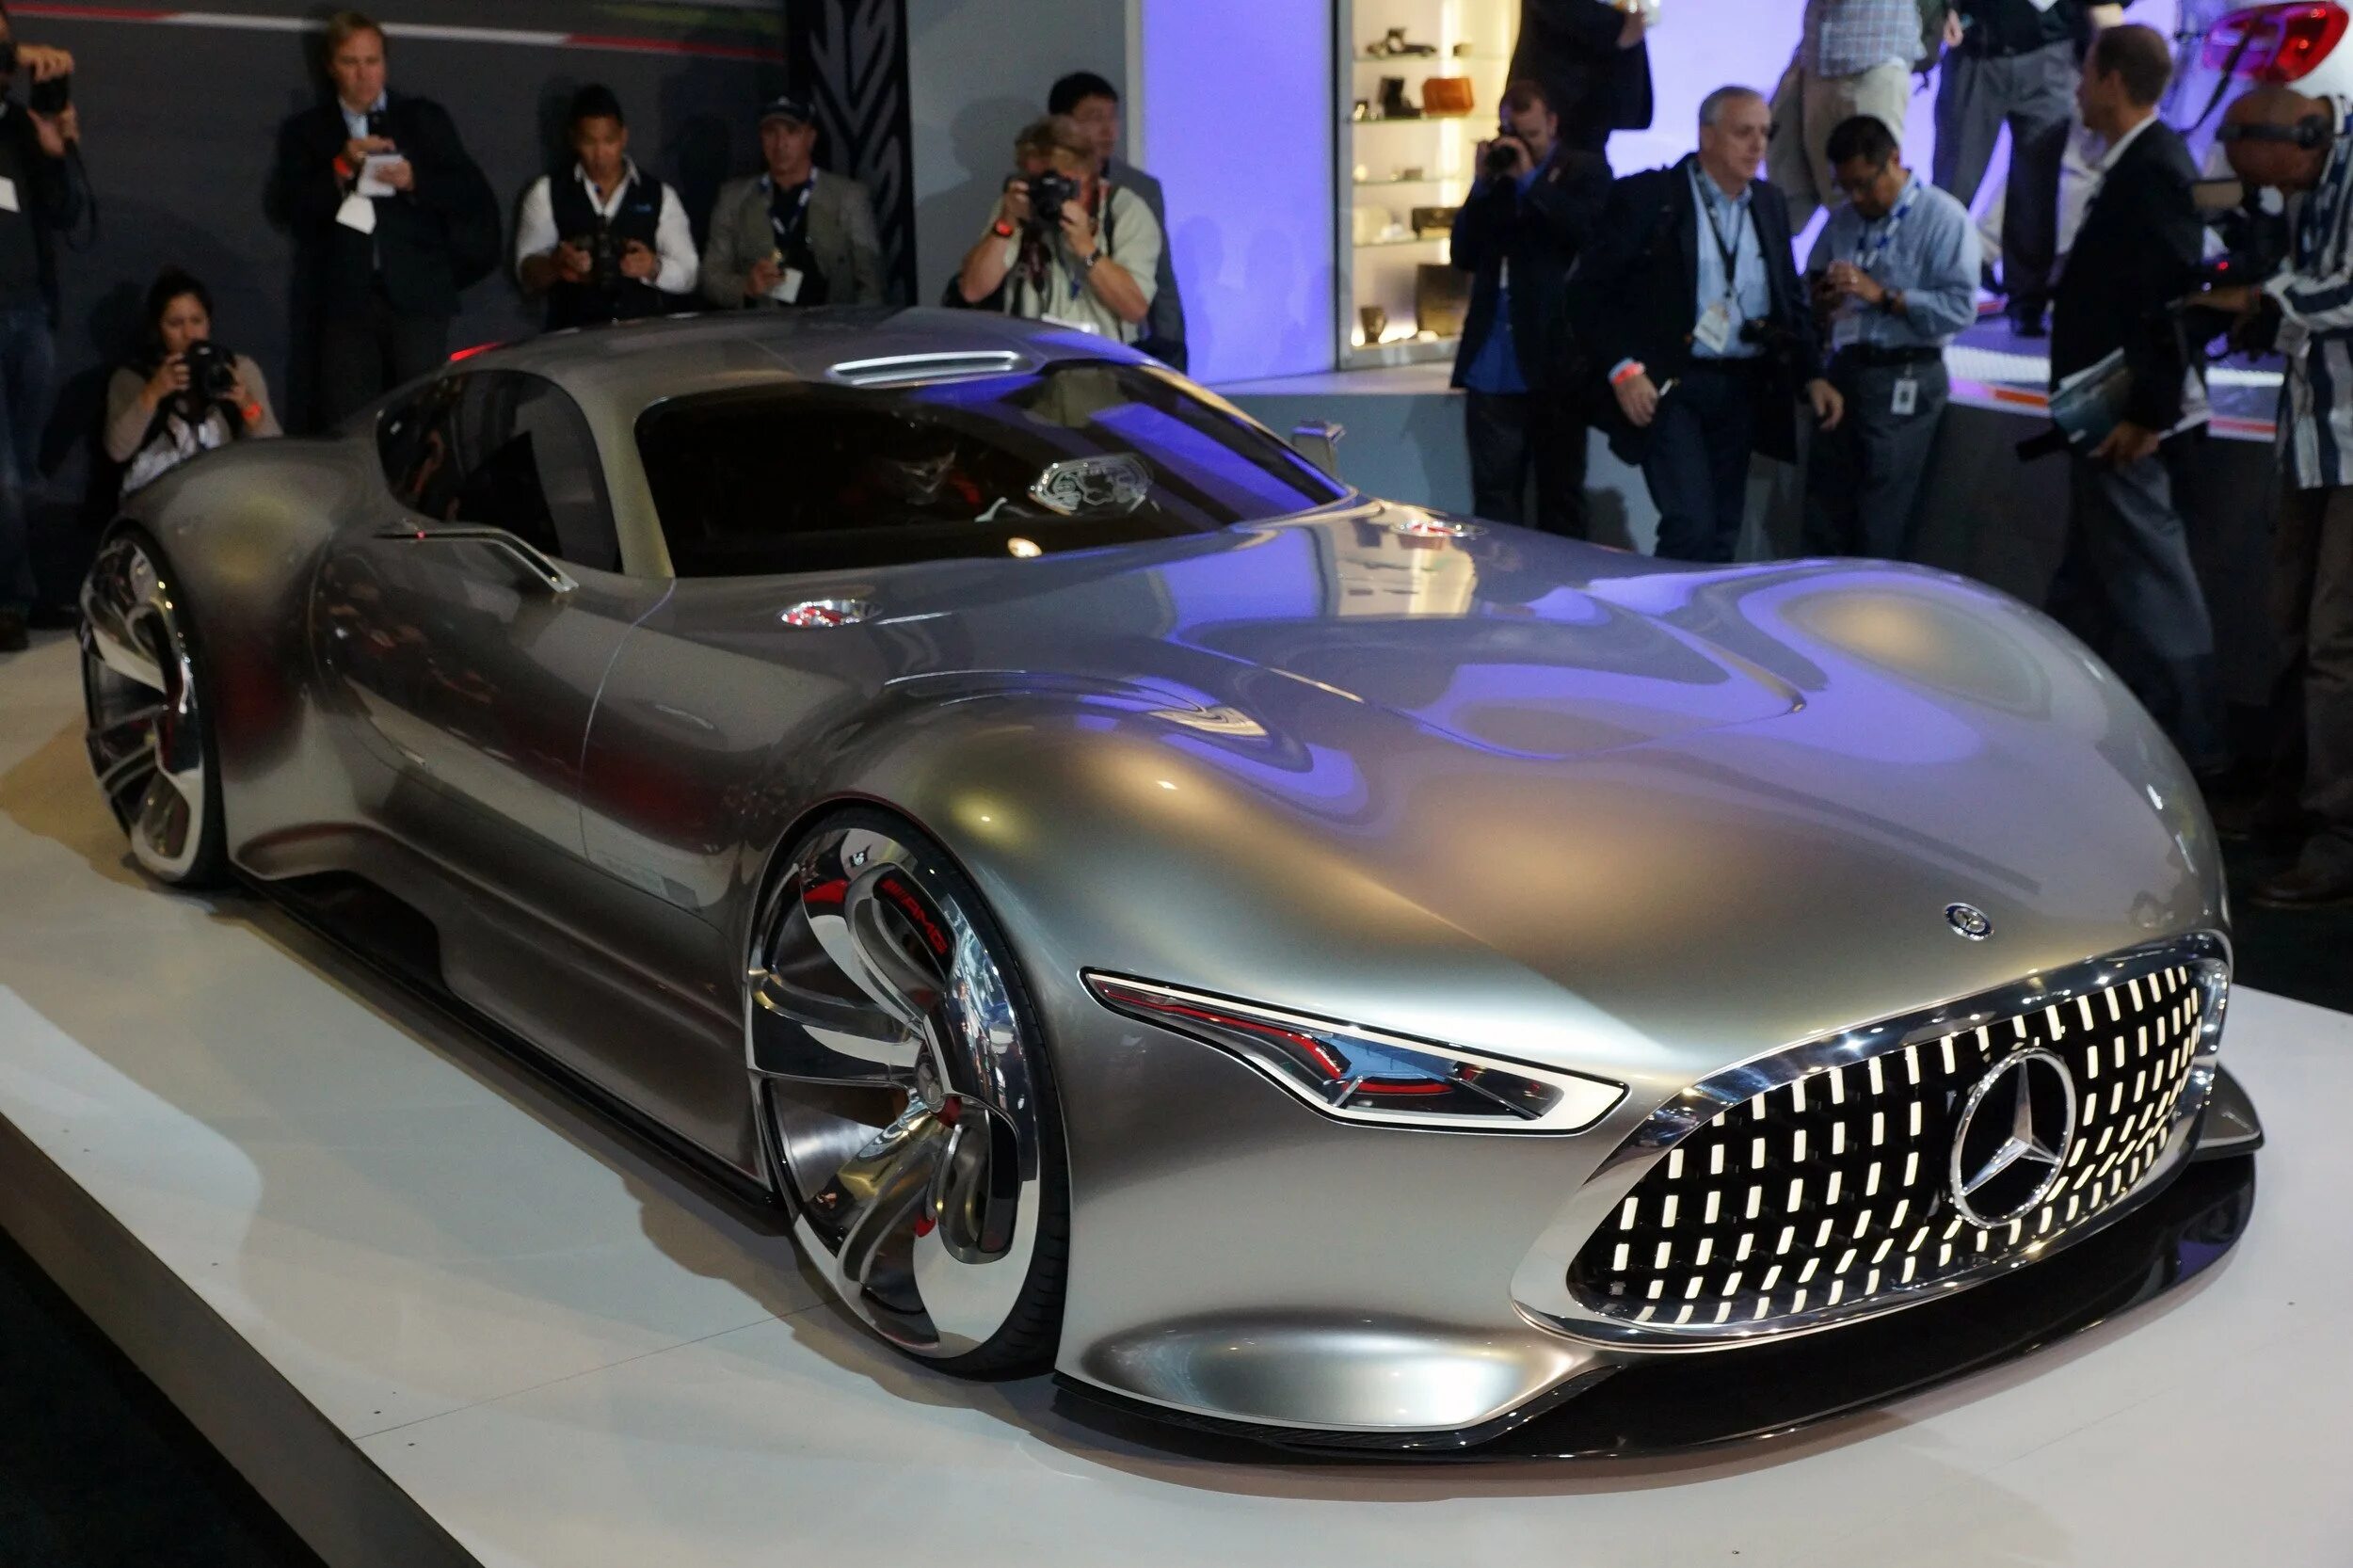 Последний автомобиль. Мерседес AMG Vision Gran Turismo. 2013 Mercedes-Benz AMG Vision Gran Turismo Concept. Мерседес 2020 AMG Vision. Суперкар Мерседес Бенц АМГ ВИЗИОН.